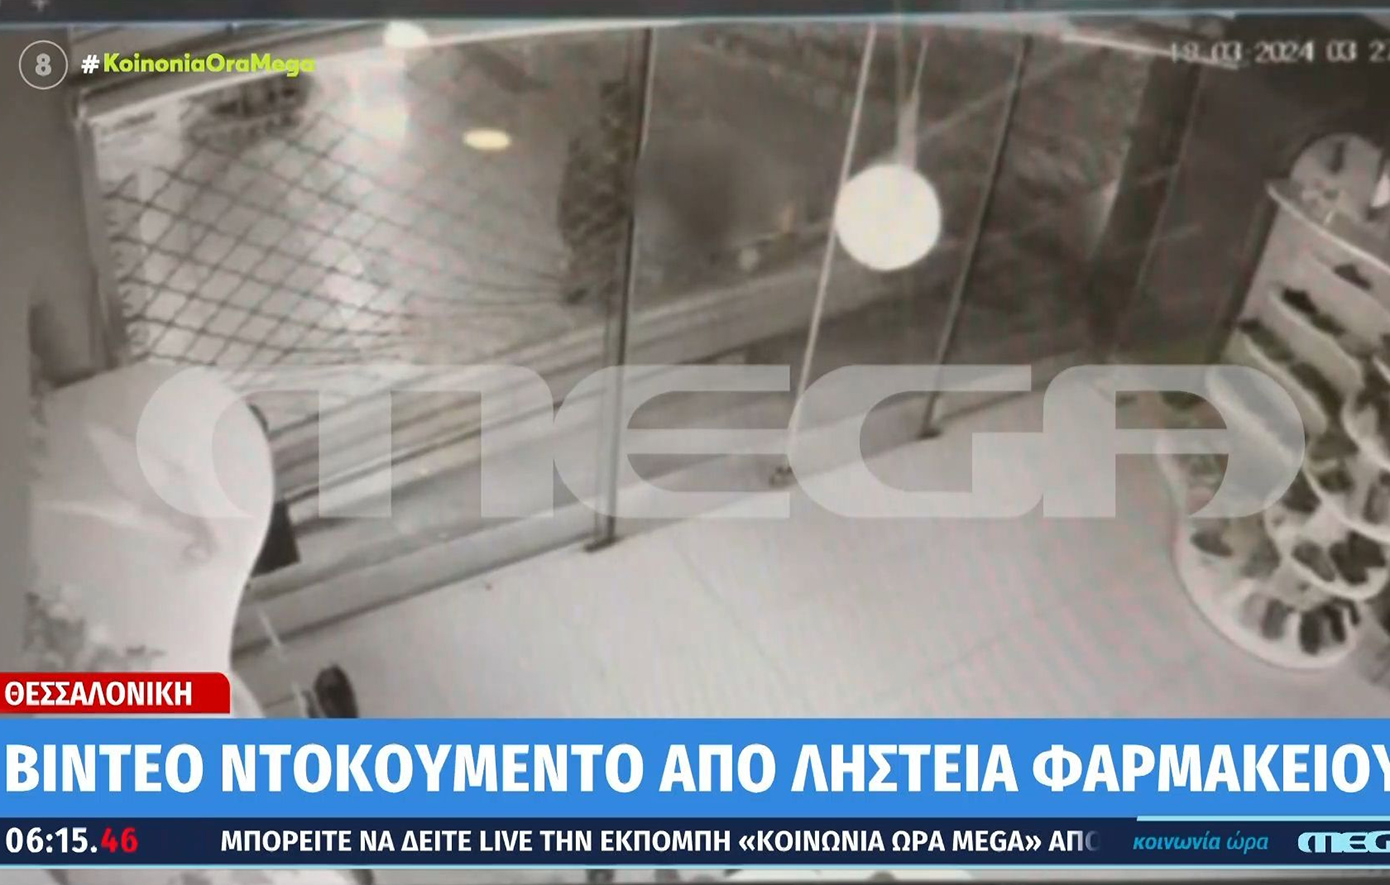 Βίντεο ντοκουμέντο από ληστεία σε φαρμακείο της Θεσσαλονίκης &#8211; Σε 1 λεπτό και 10 δευτερόλεπτα τα έκαναν όλα φύλλο και φτερό